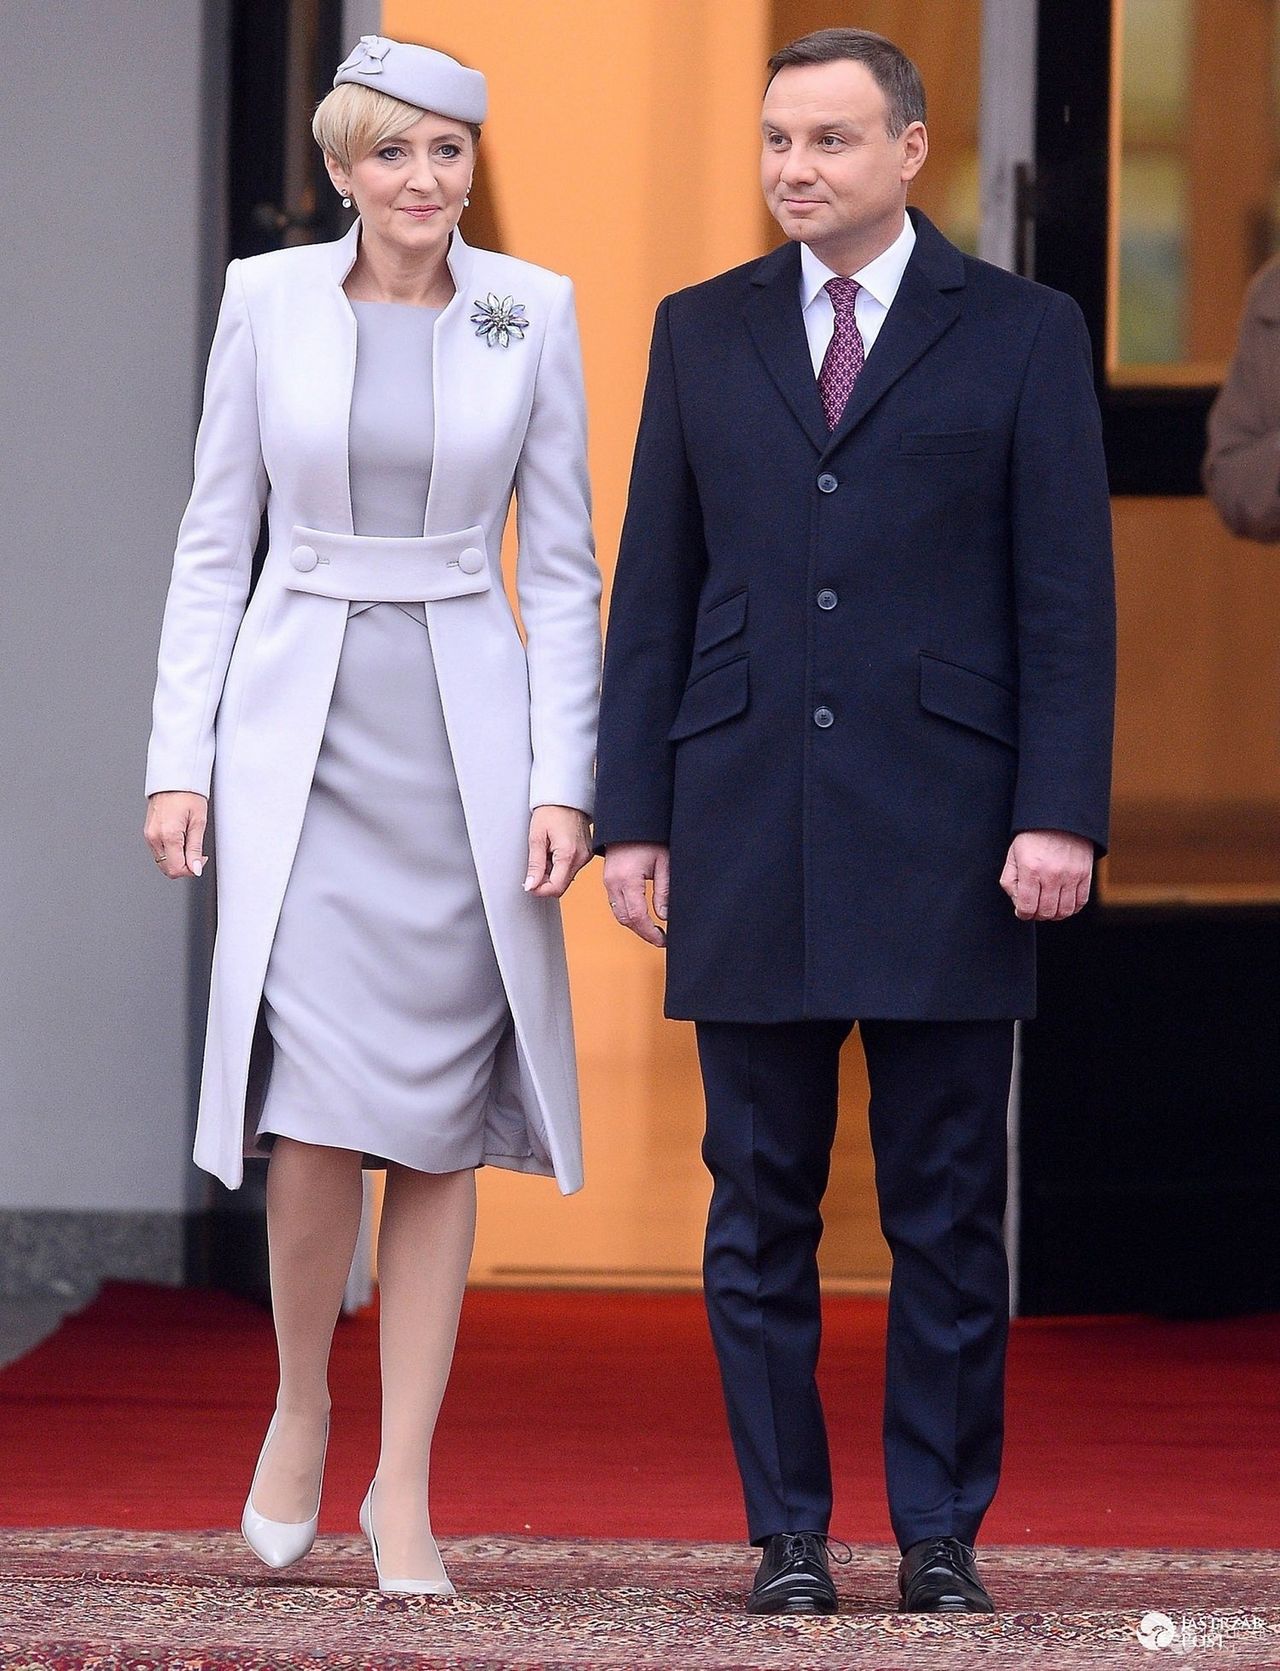 Para prezydencka: Andrzej Duda i Agata Duda prywatnie wywiad